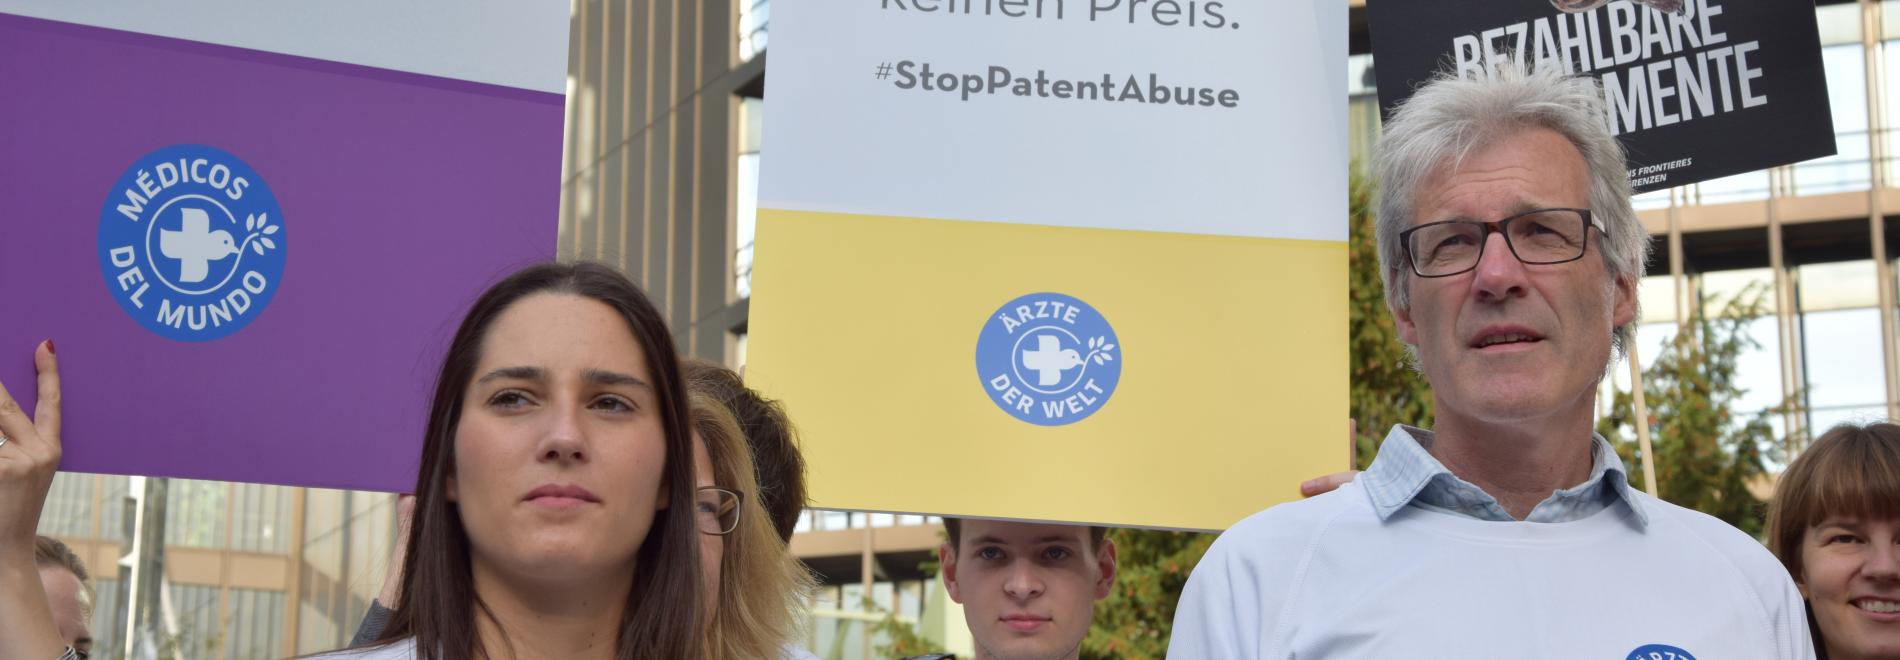 Protest vor dem Europäischen Patentamt 